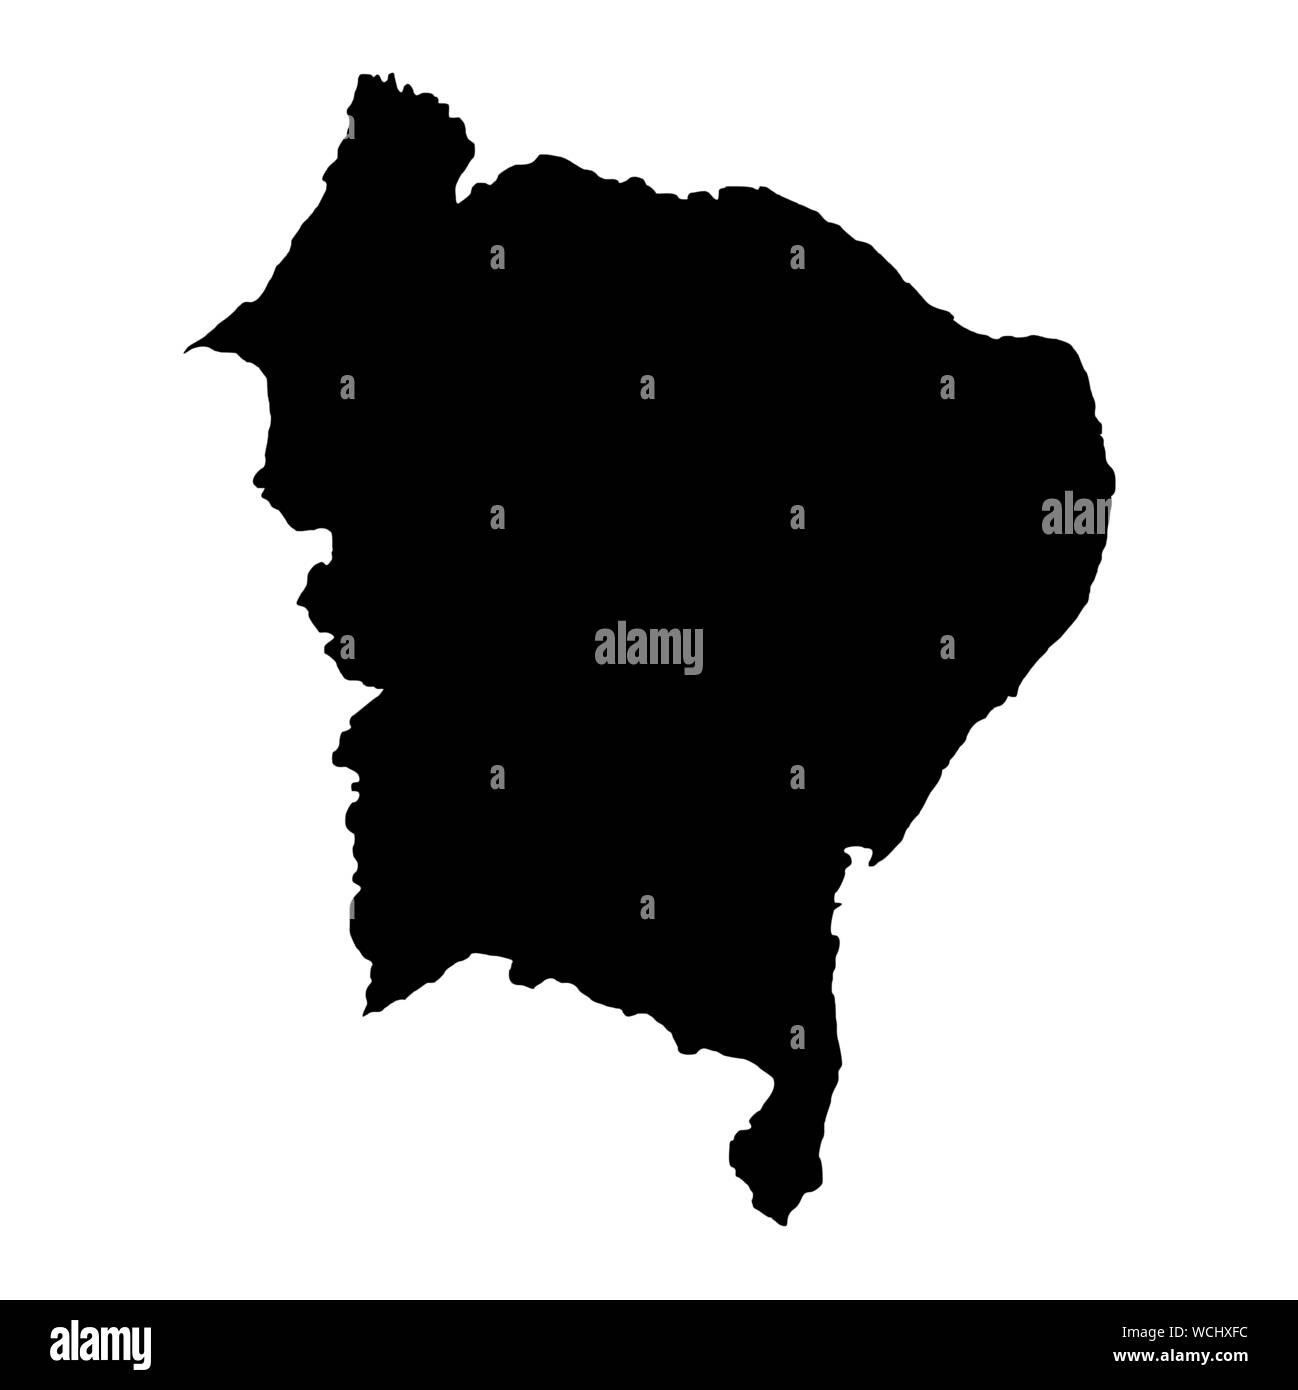 Brasilien Nordosten silhouette Karte Stock Vektor